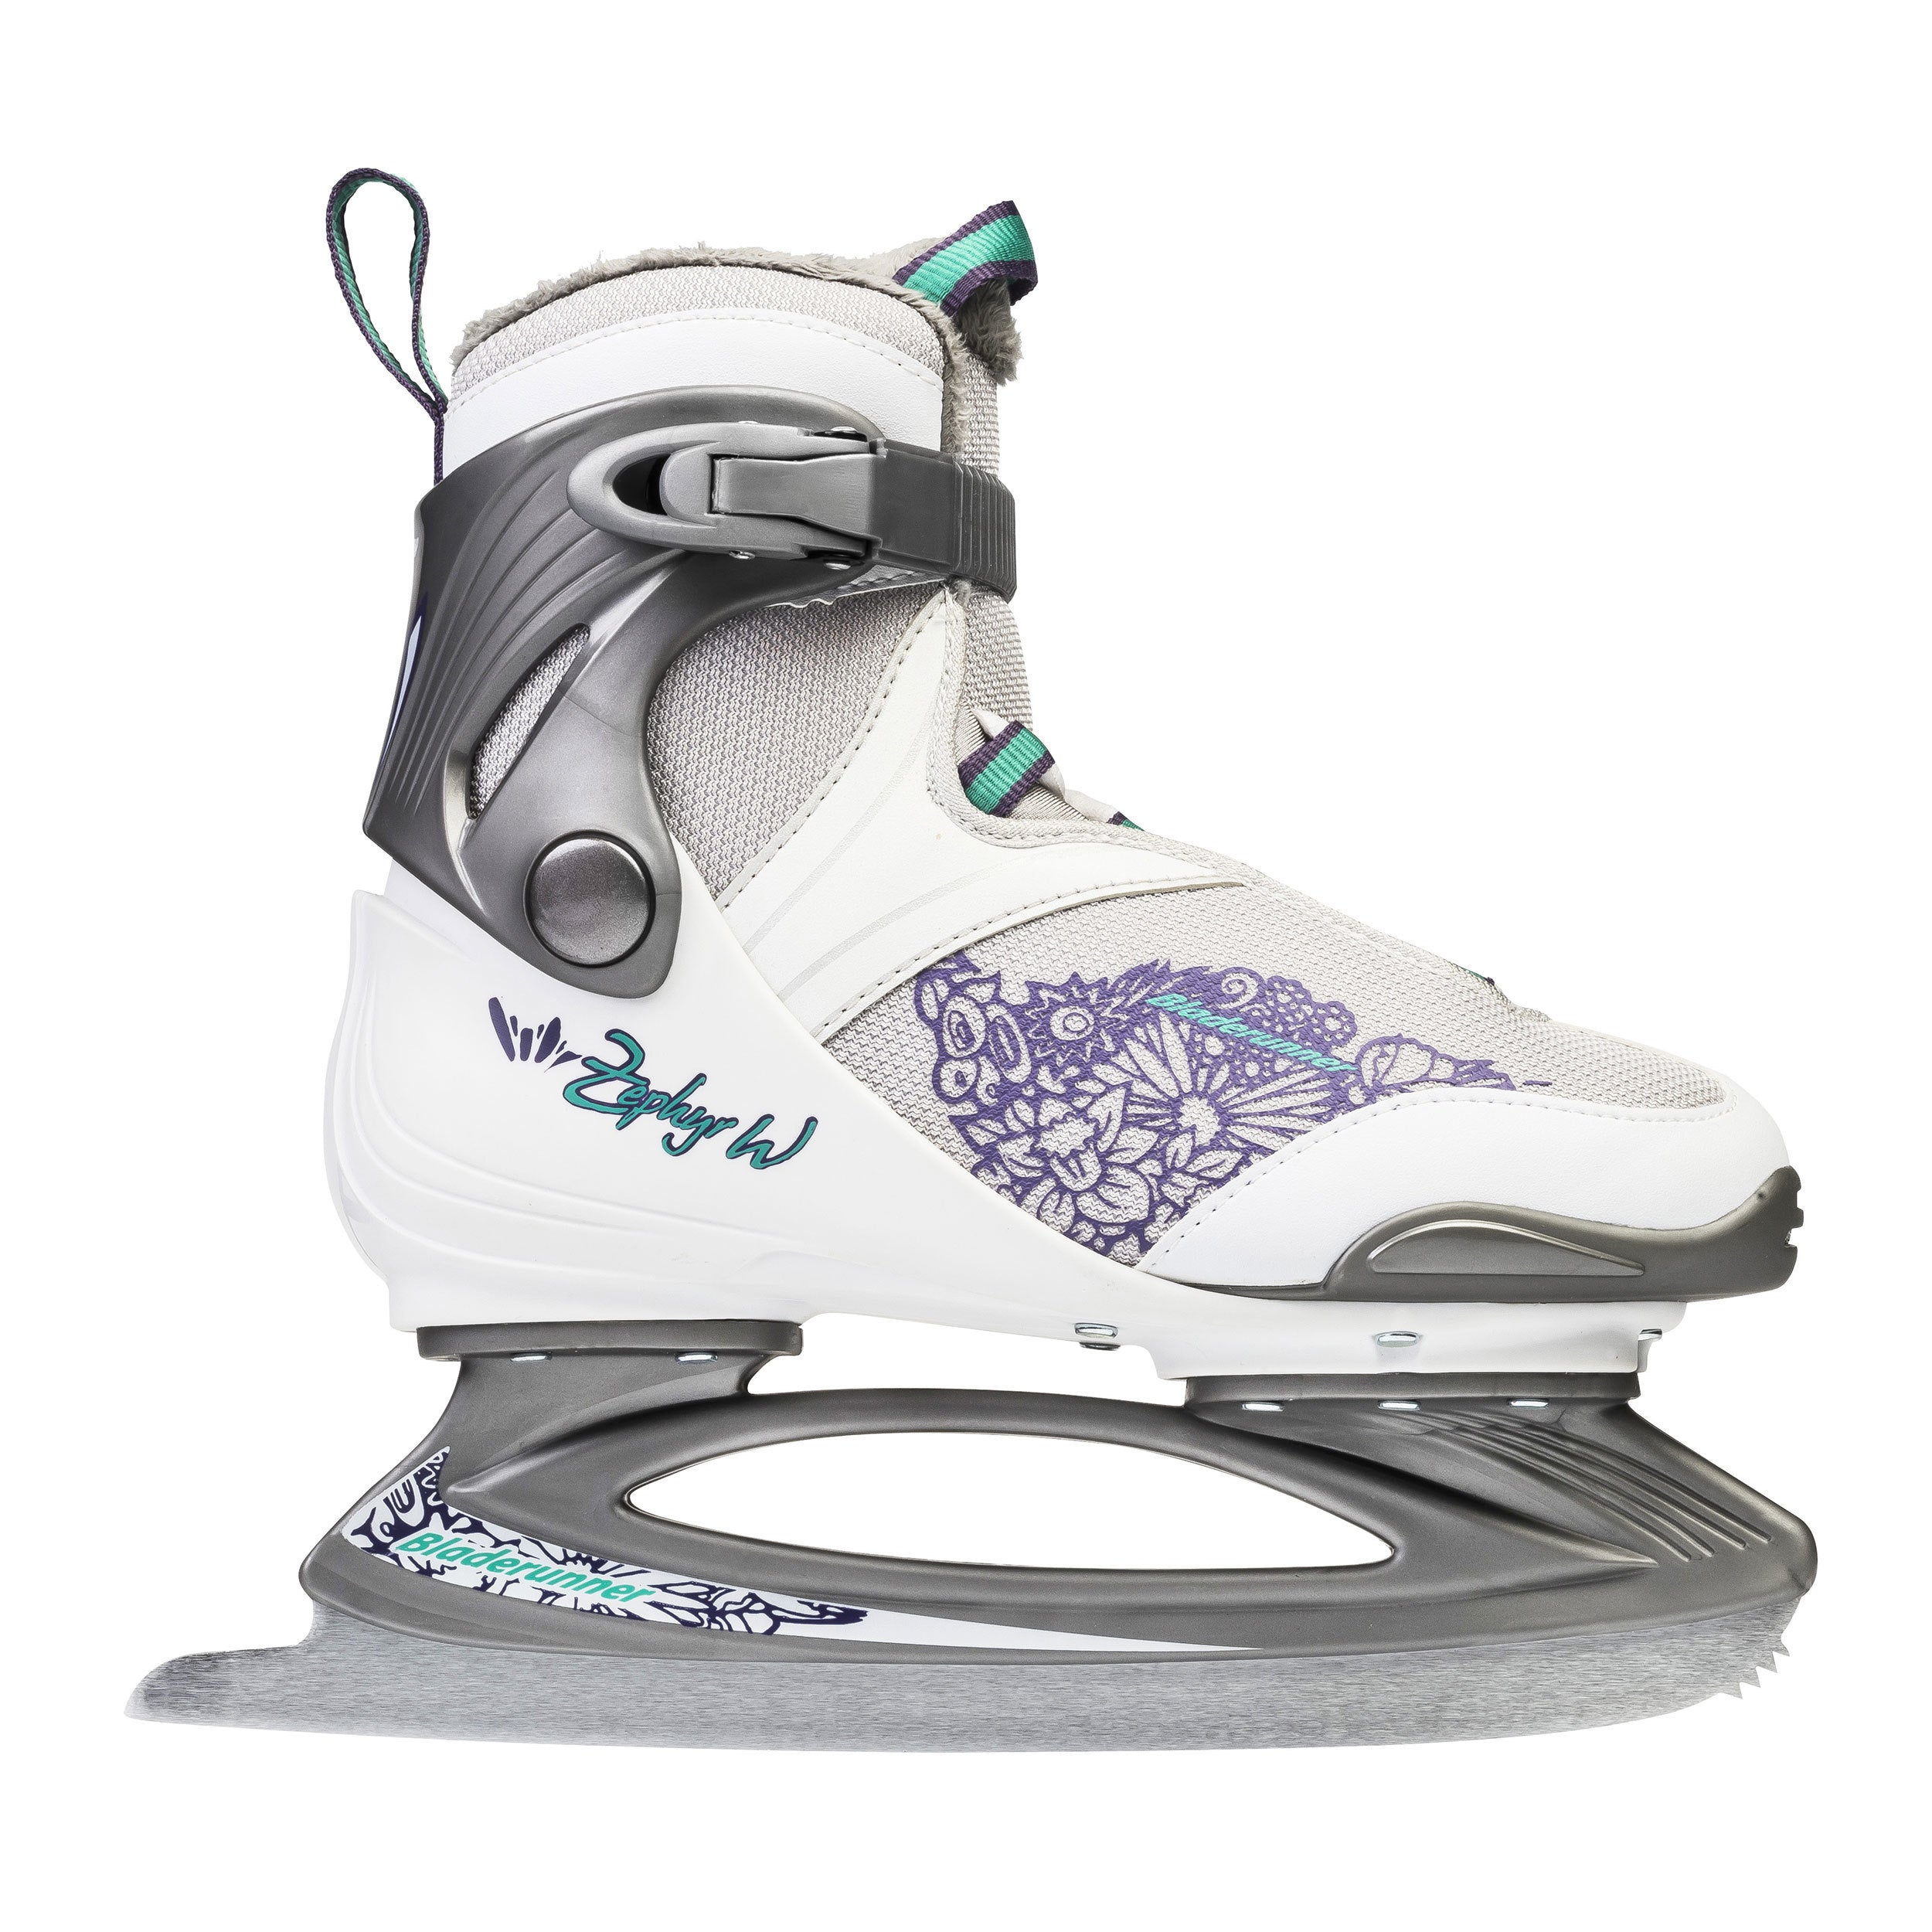 Bladerunner Zephyr Women's Ice Skates White/Purple 2021 - Size 7.0 or